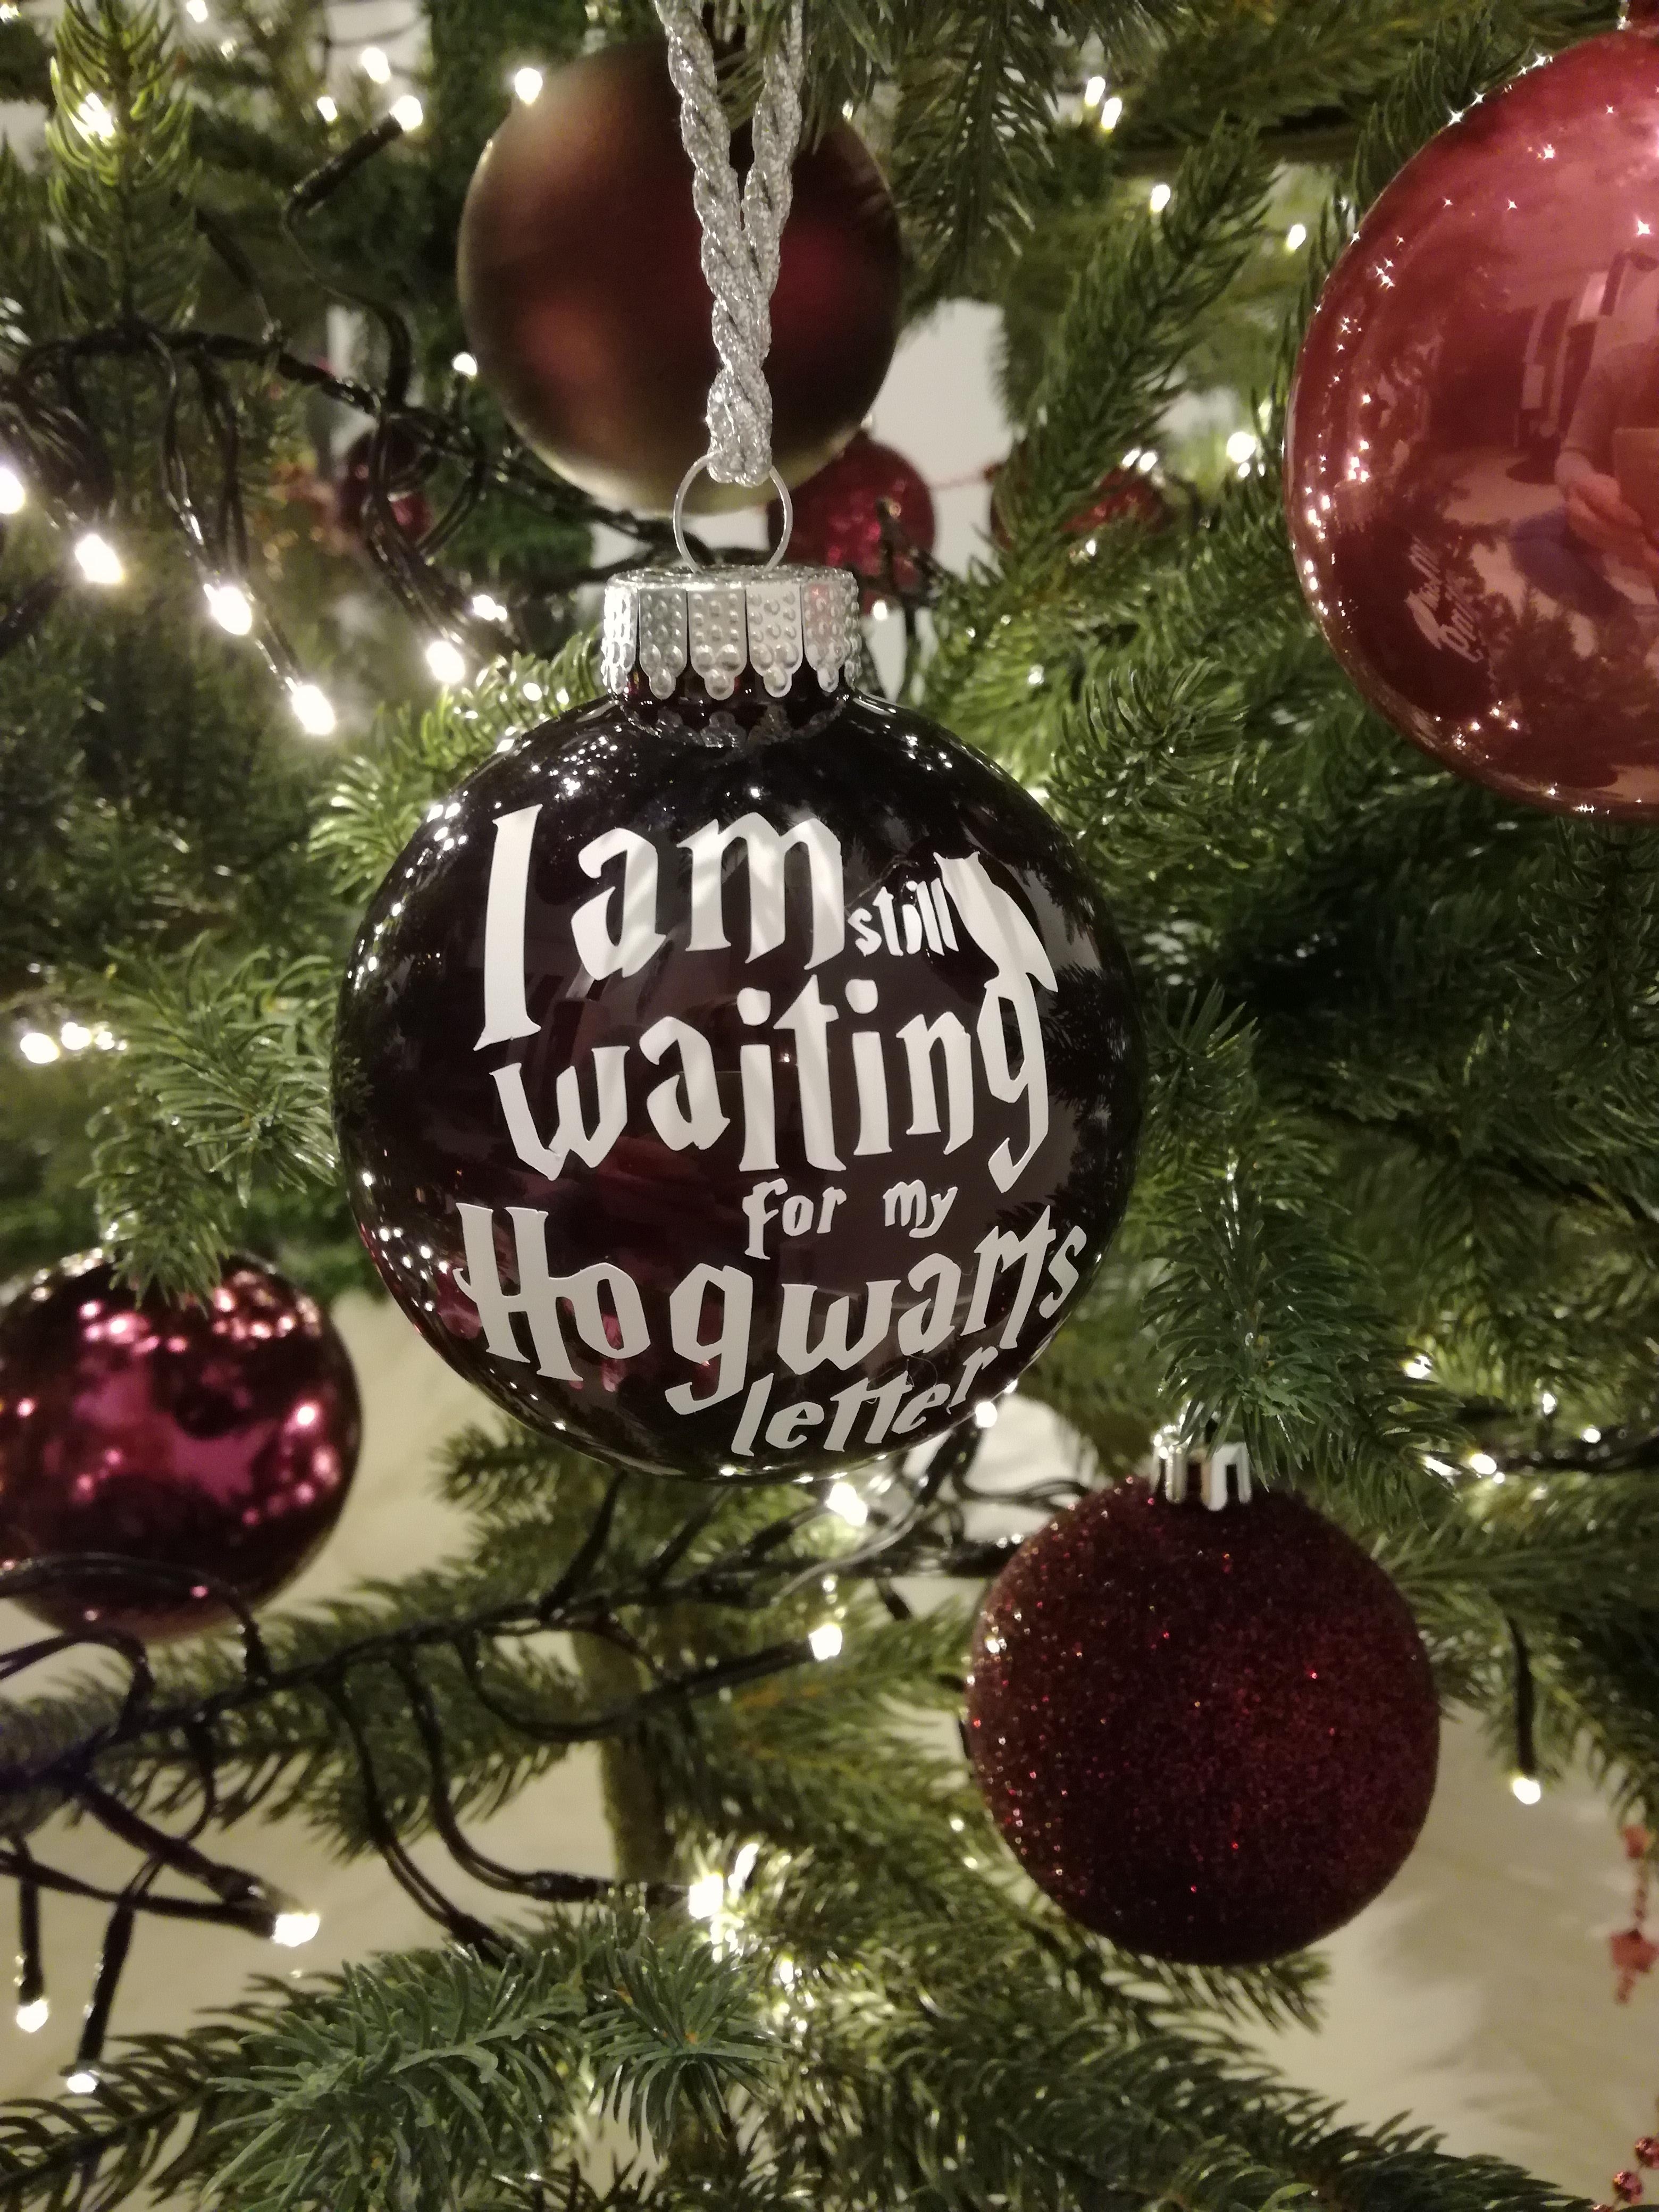 Frohe Weihnachten ihr Lieben ❤
#Weihnachten #Hogwarts #schoenezeit